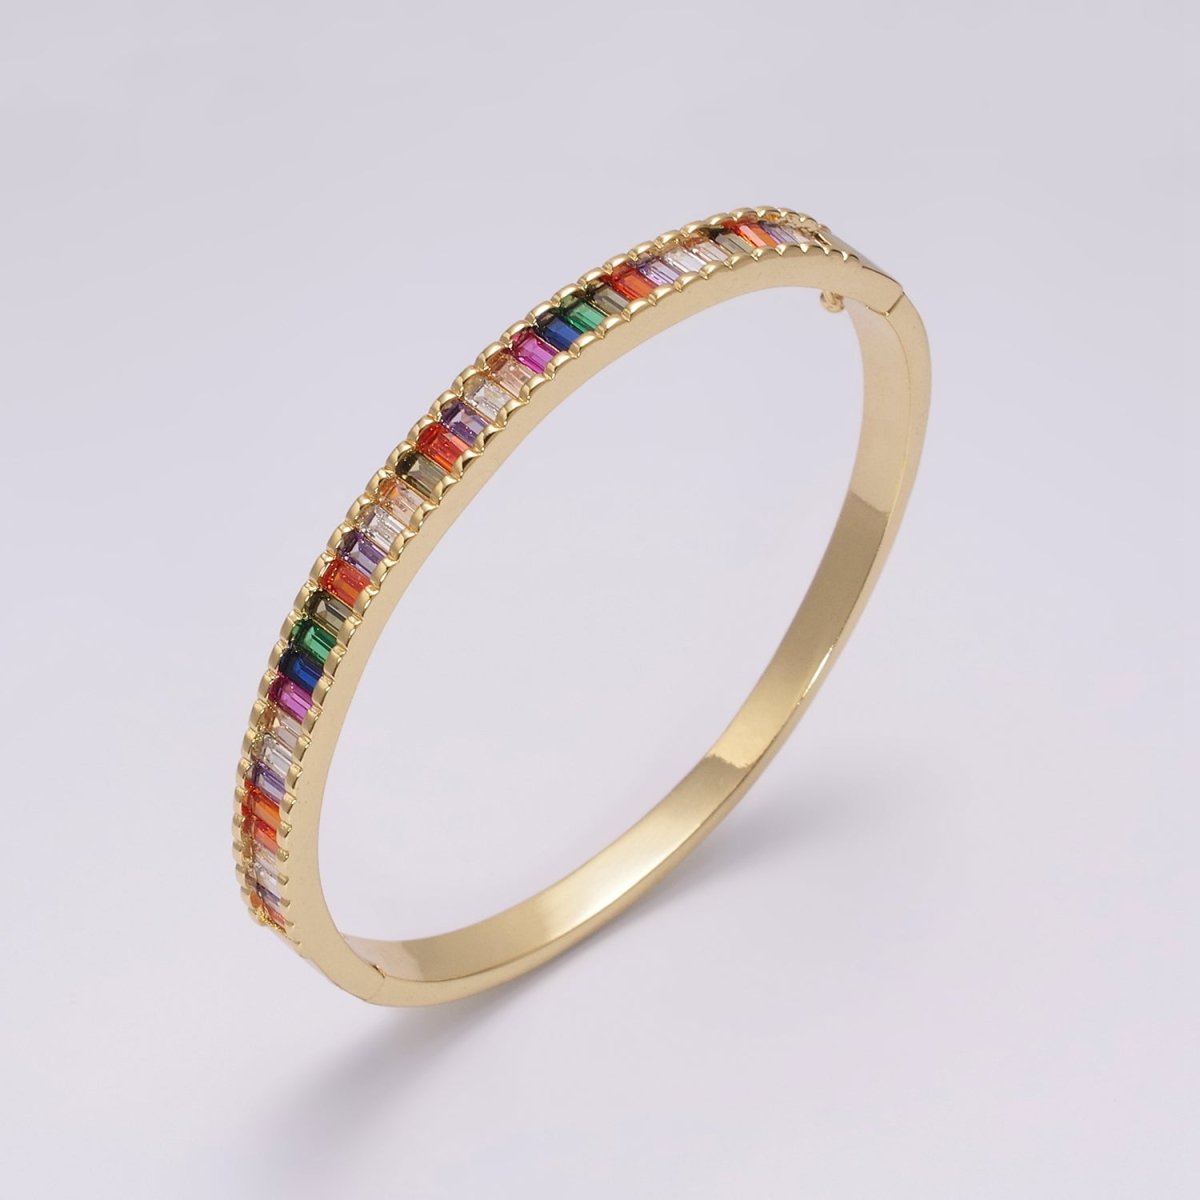 Baguette bracelet Rainbow CZ Gem Stackable Gold Bracelet | Chunky Gold Bracelet | Luxury Crystal Stacking Bangle Bracelet | WA-427 Clearance Pricing - DLUXCA